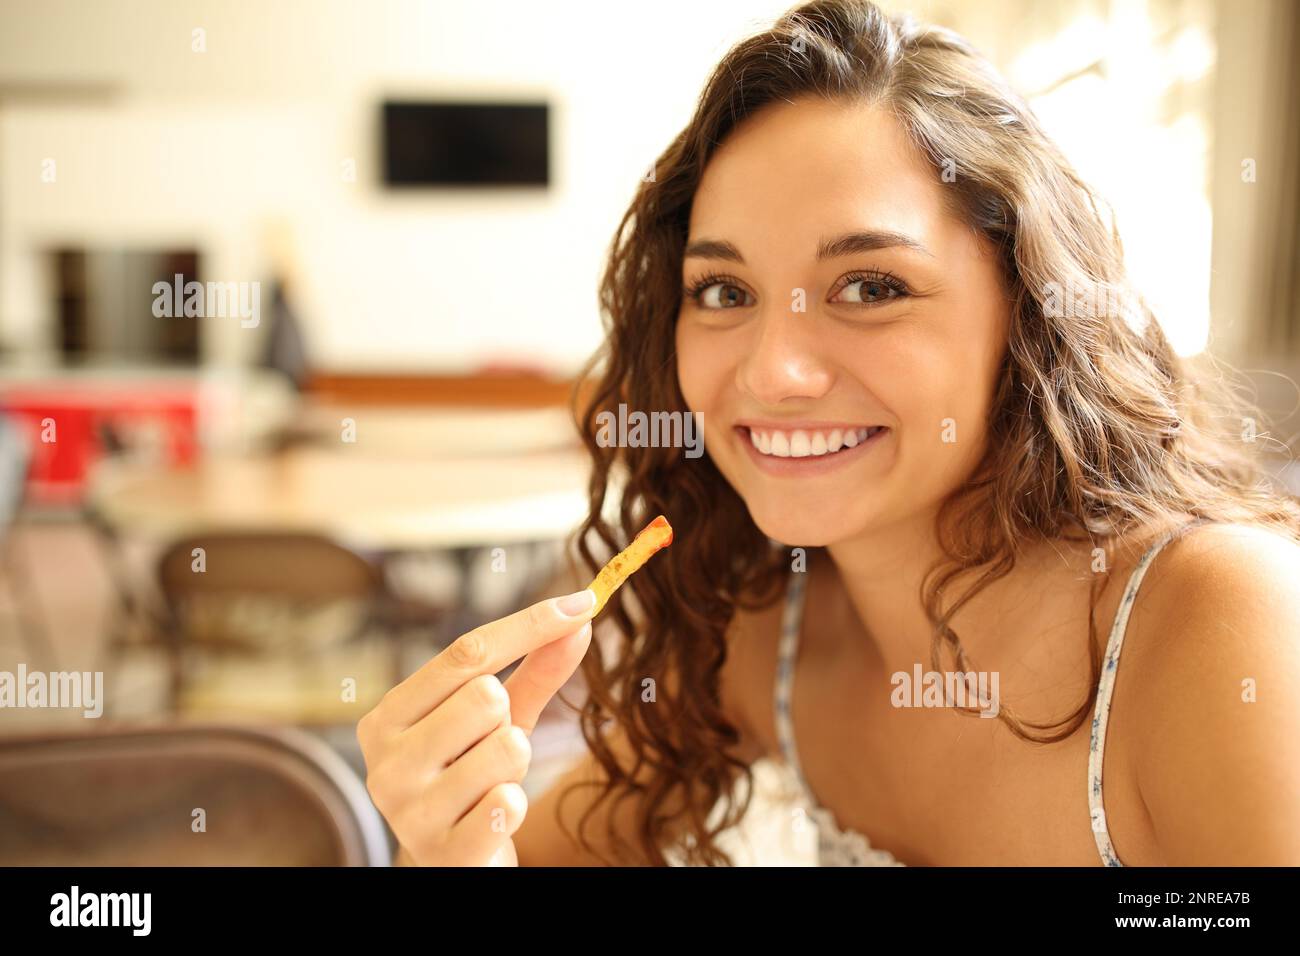 Une femme heureuse dans un café-restaurant mangeant du potatoe et regardant l'appareil photo Banque D'Images